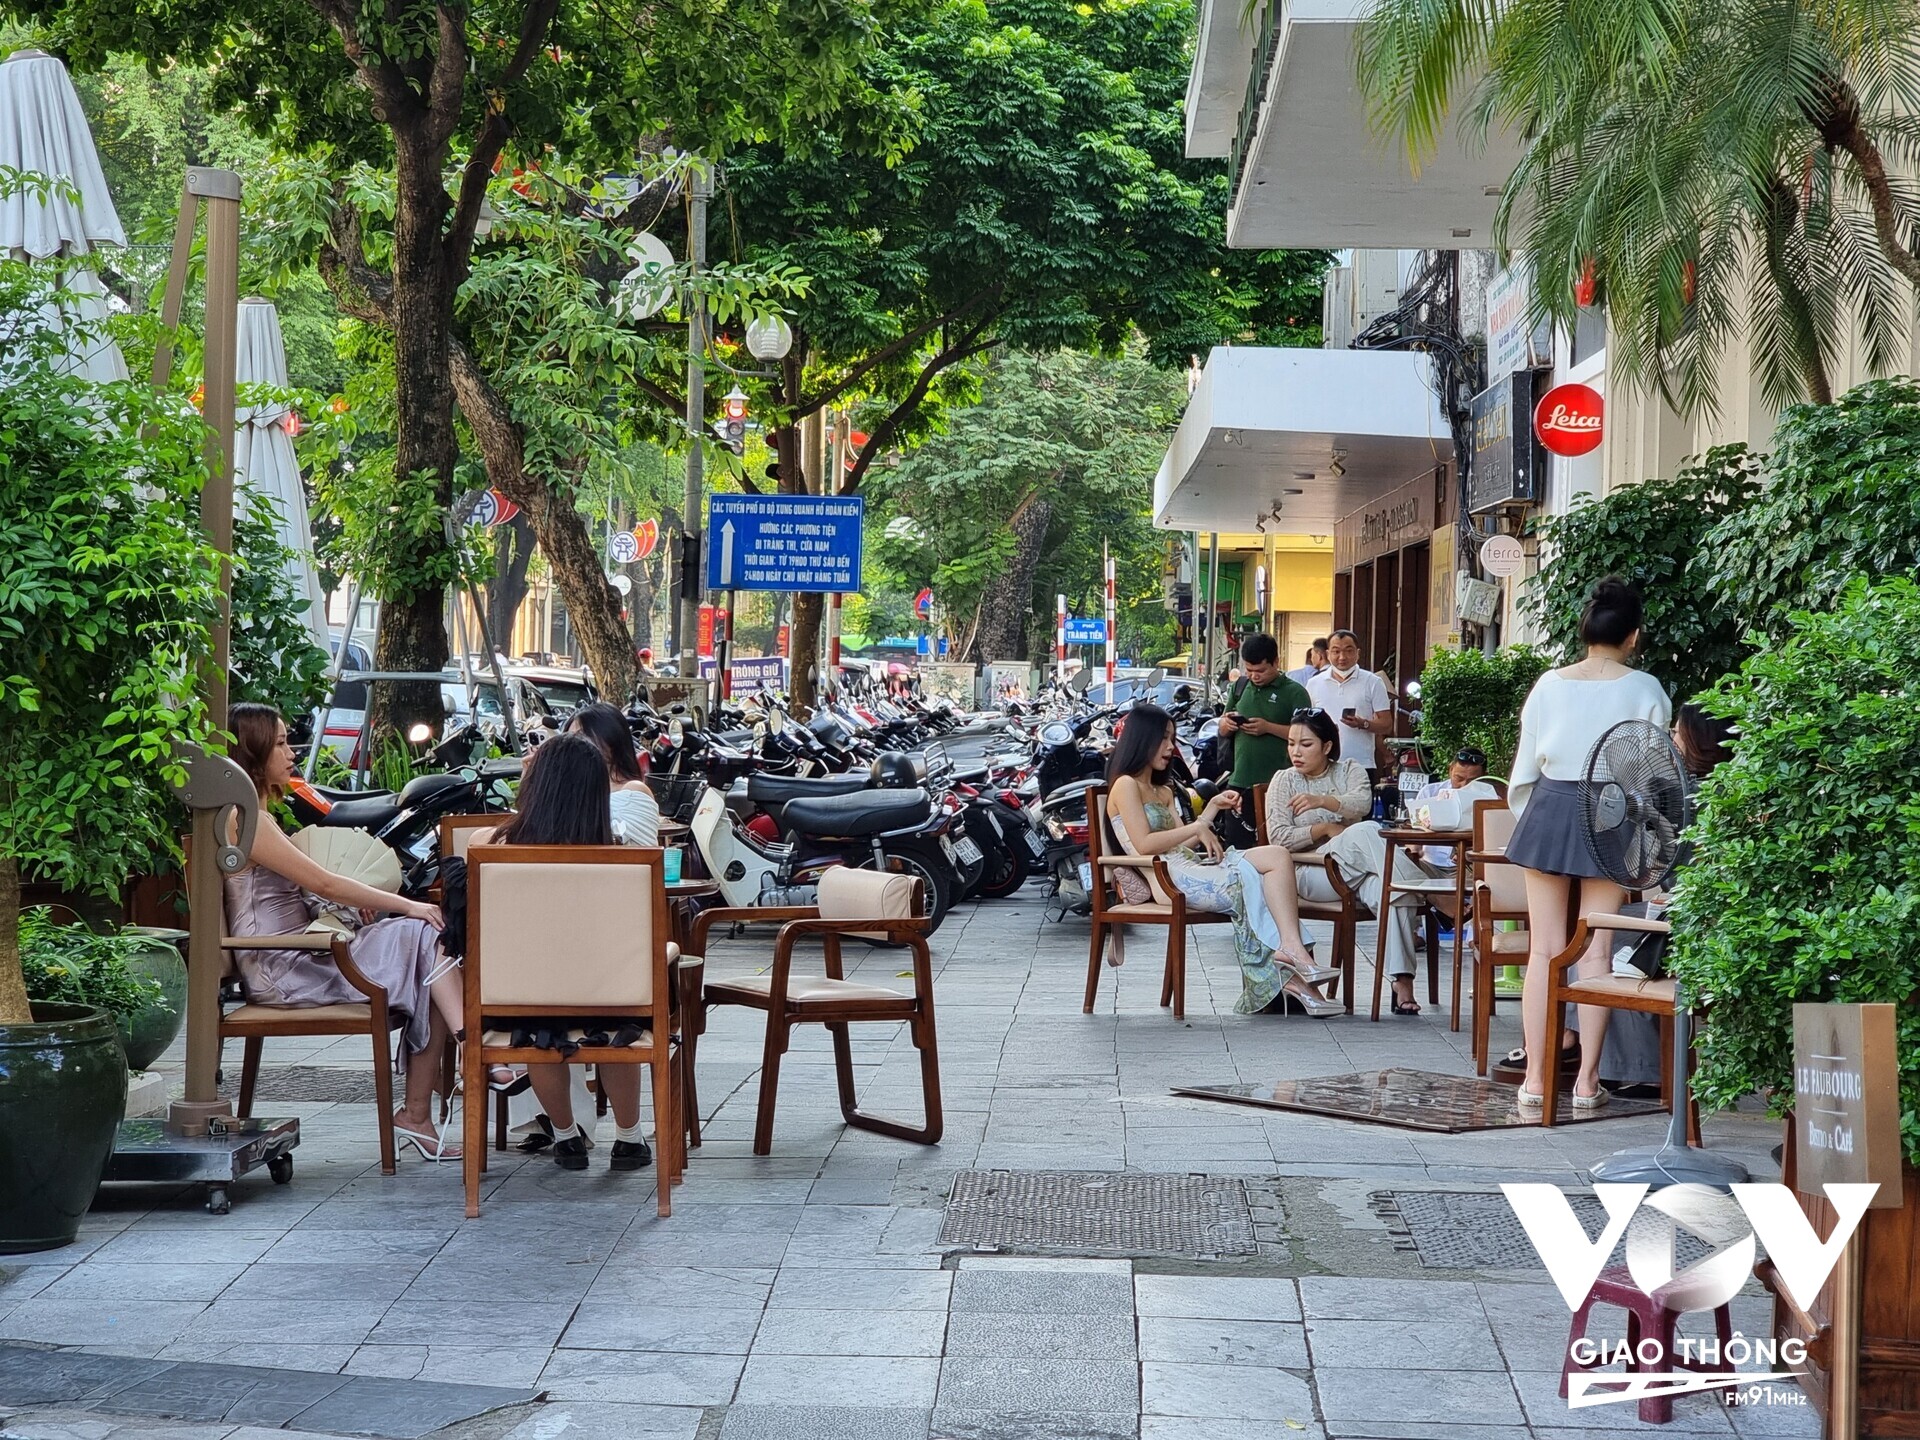 Mặc dù có mặt vỉa hè rất rộng, thế nhưng tại phố Ngô Quyền (Hoàn Kiếm) khoảng vỉa hè rộng này cũng trở thành nơi để xe máy của các hộ kinh doanh. Thậm chí, quán café này còn chiếm dụng luôn vỉa hè để kê bàn ghế cho khách hàng.